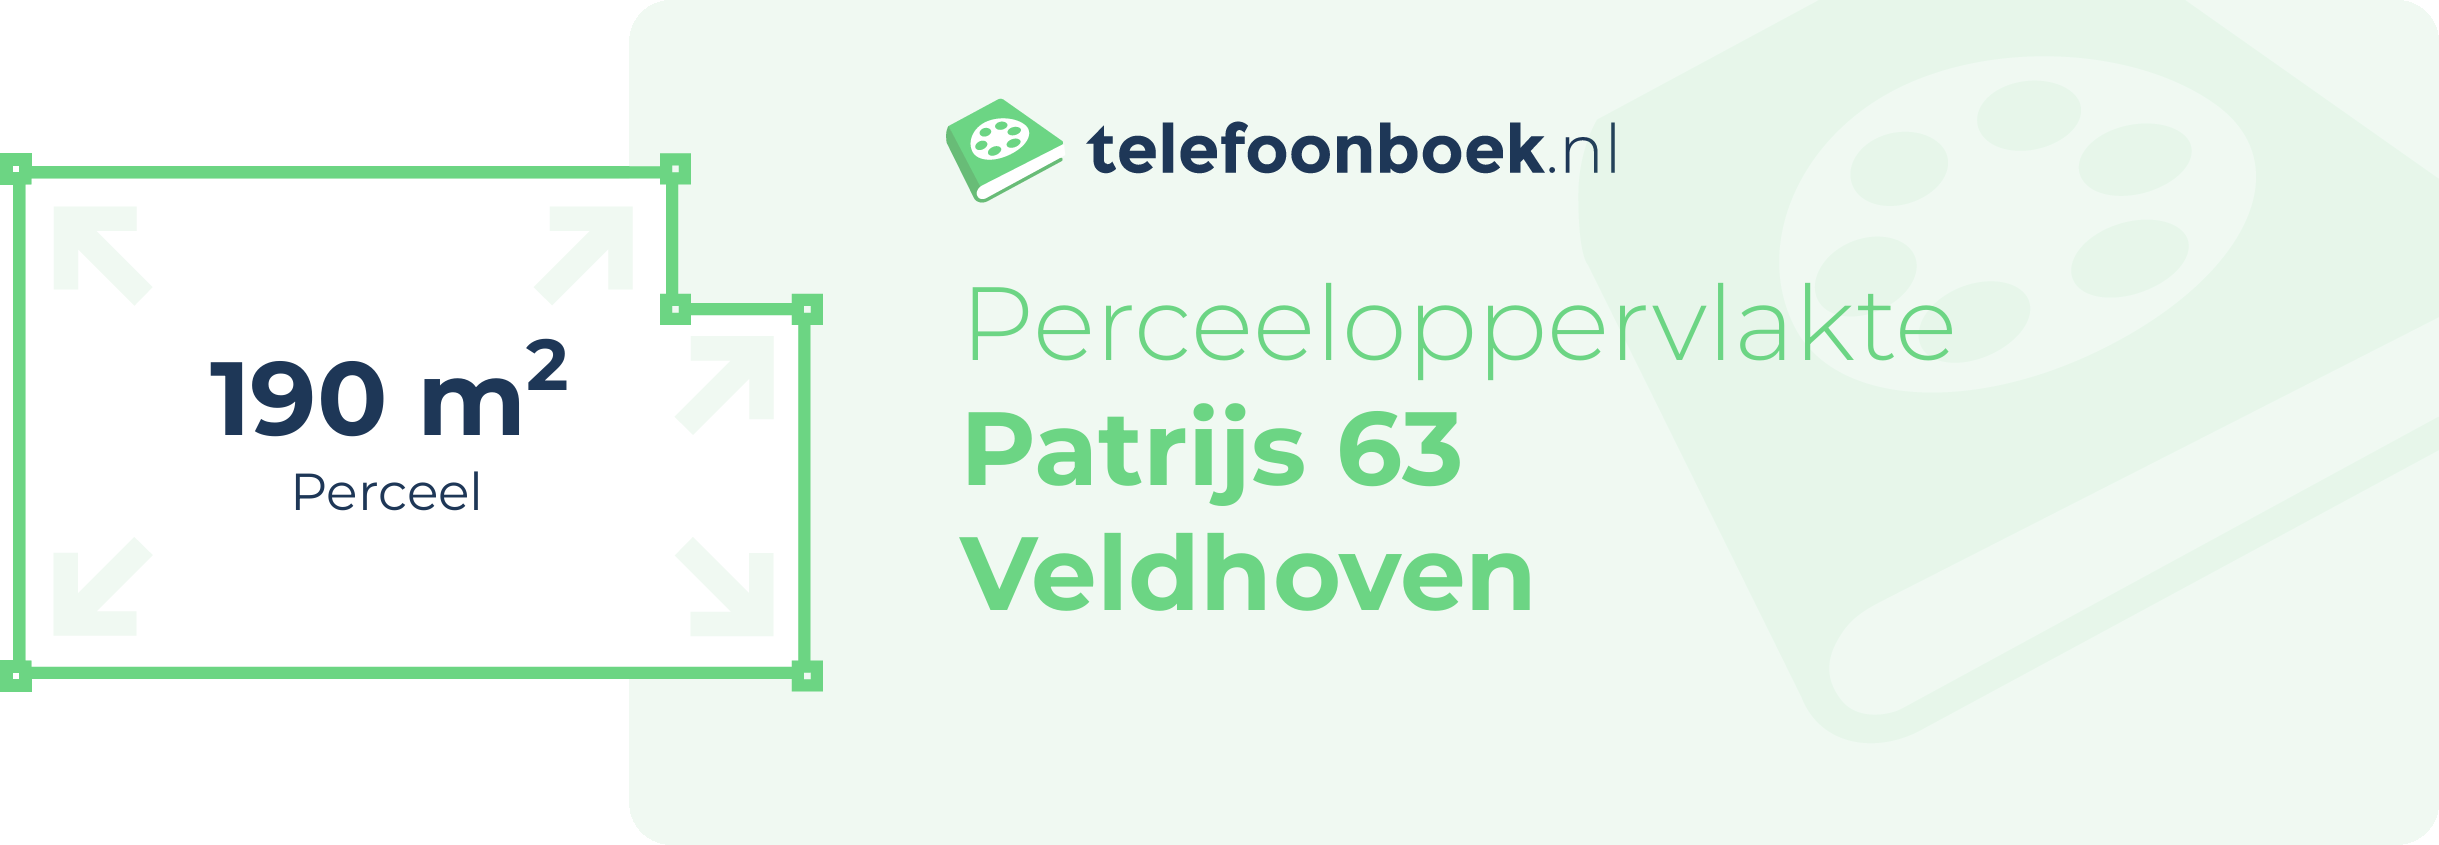 Perceeloppervlakte Patrijs 63 Veldhoven